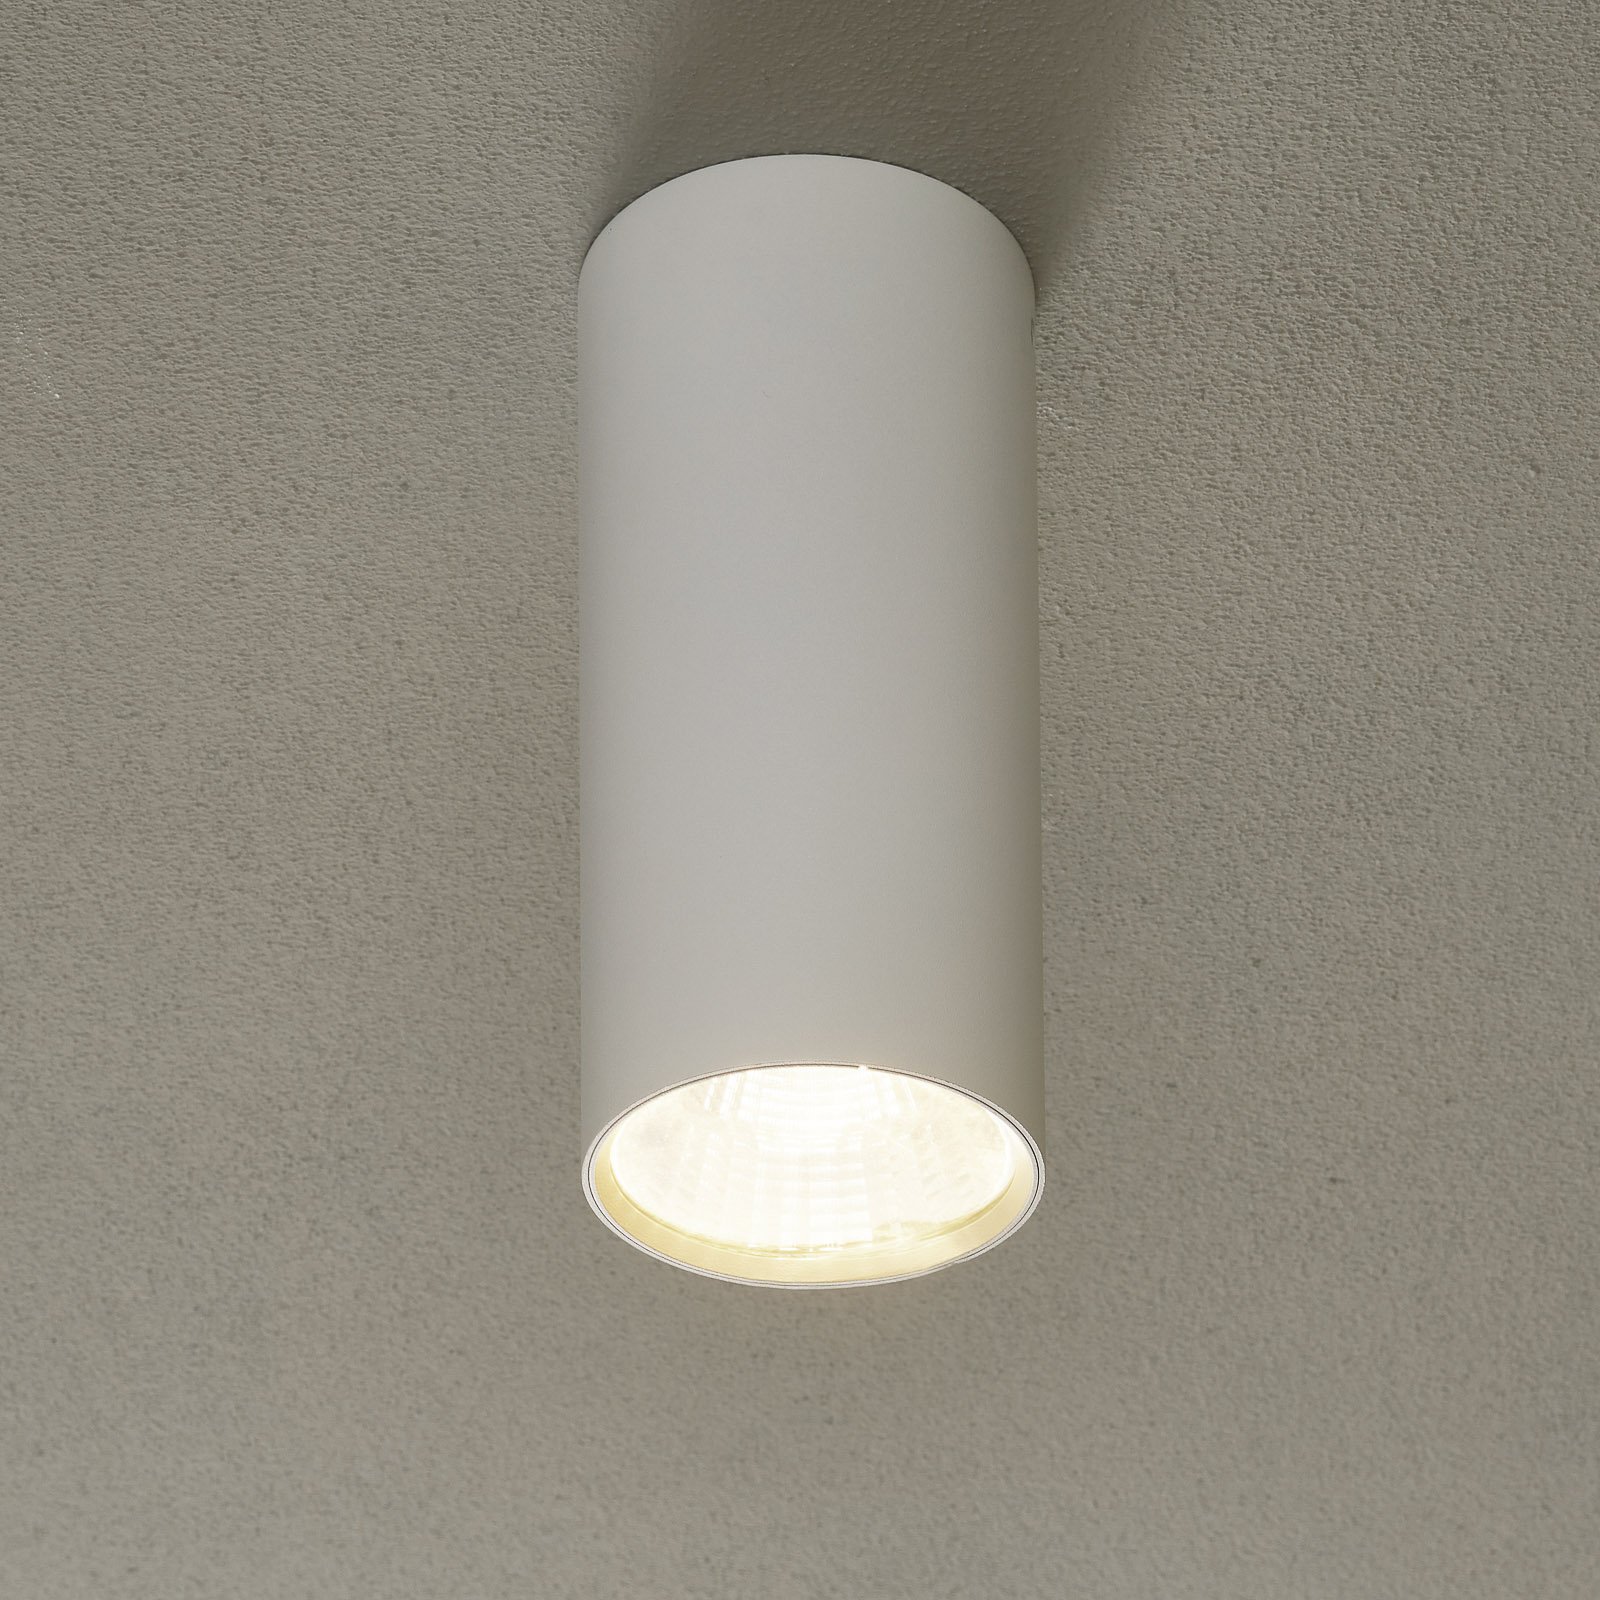 Lucande Takio downlight LED 36° 2700K Ø10cm blanco